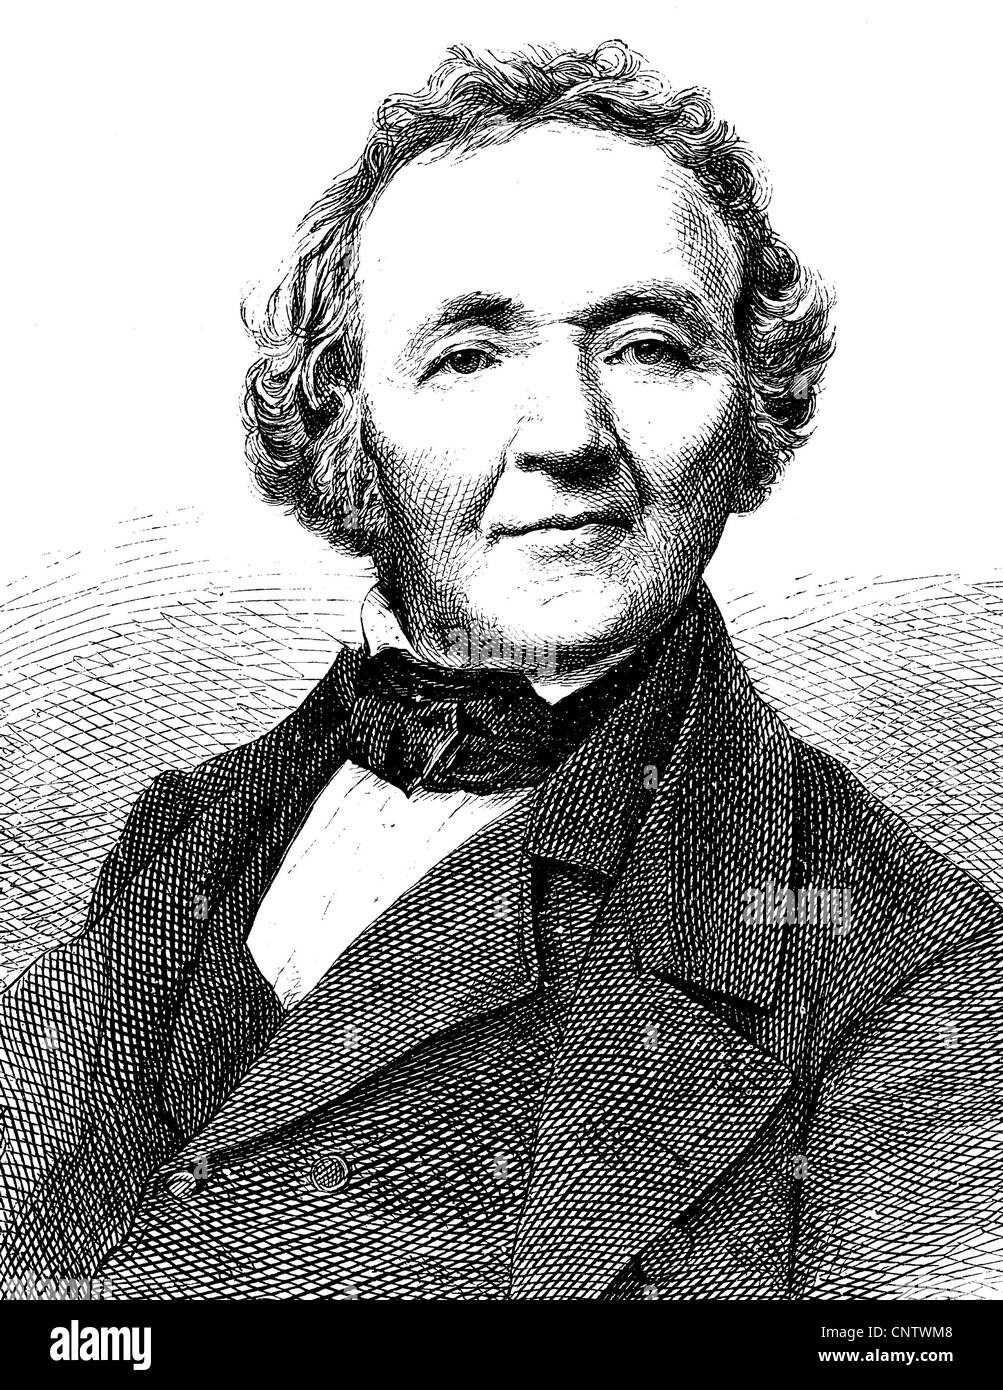 Franz Leopold Ranke, a partir de 1865 von Ranke, 1795-1886, un historiador alemán, cronista del estado Prusiano, Universidad enseñan Foto de stock